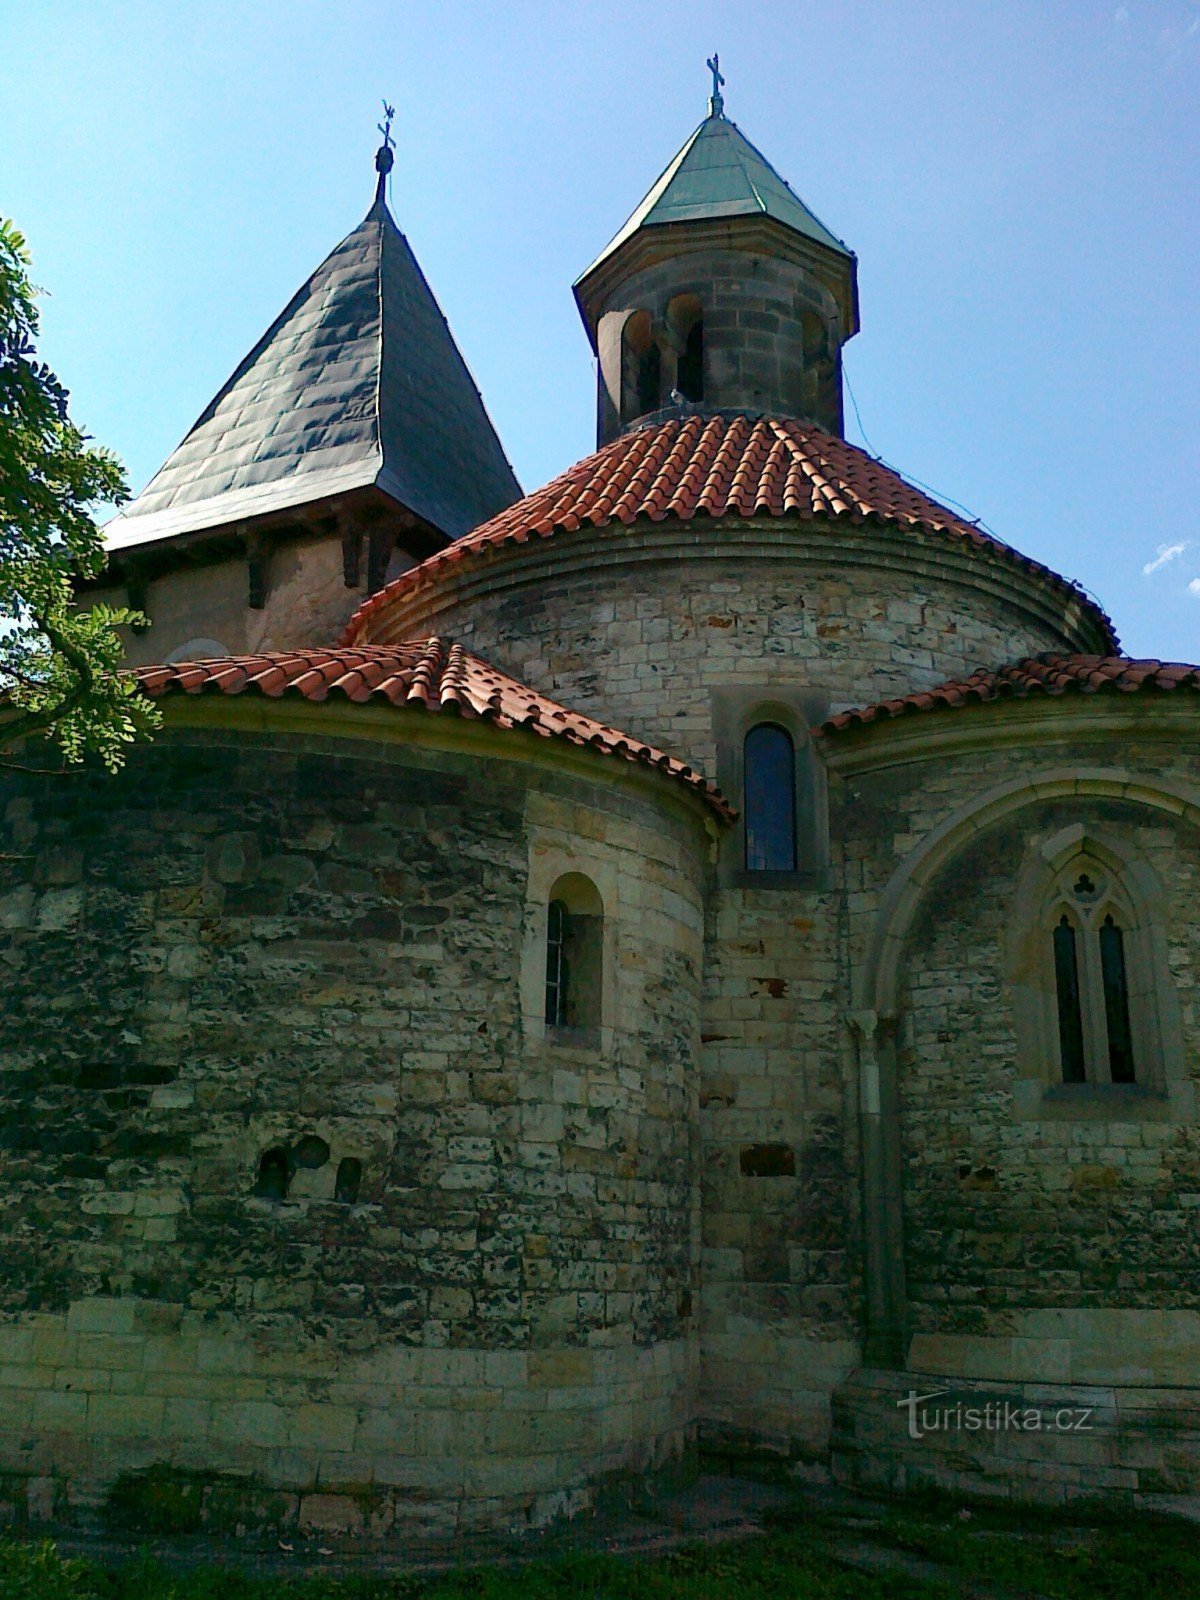 Duvans kyrka